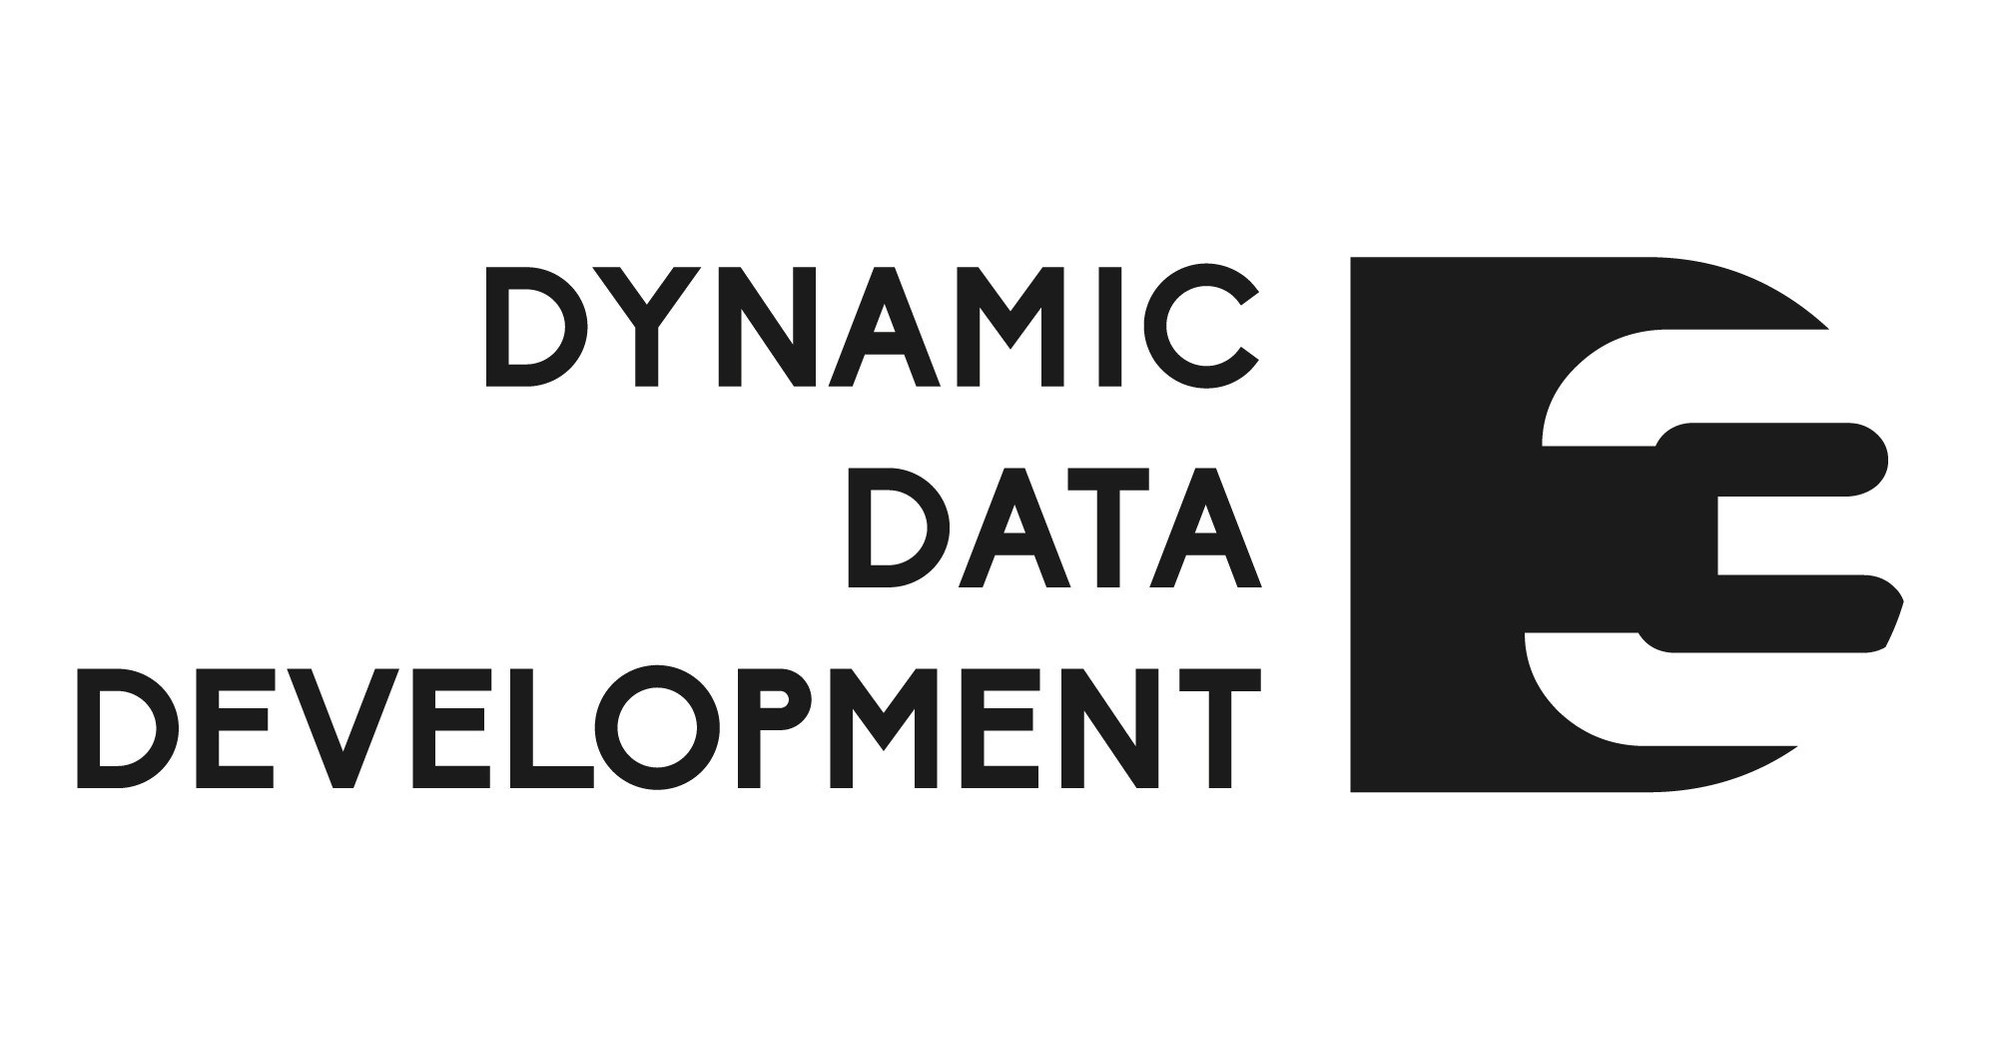 Dynamic data. Ант Девелопмент логотип. Ten Development логотип. FJ Dynamics логотип. Основа Девелопмент логотип.